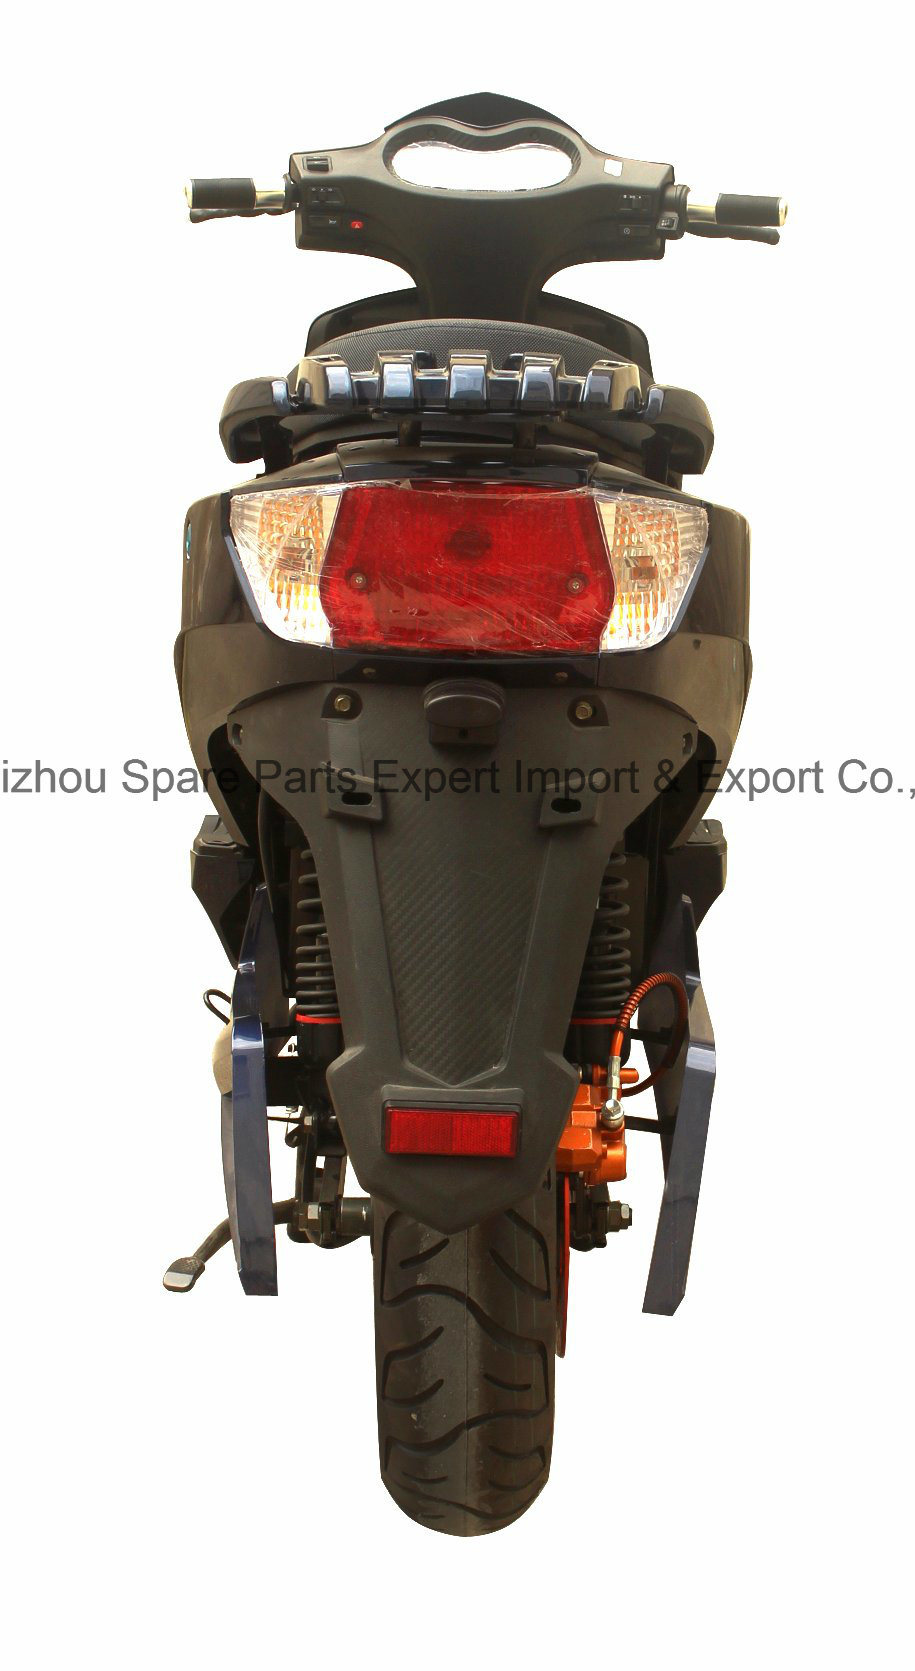 Ds 1000W72V20ah motocicleta eléctrica Scooter de alta calidad